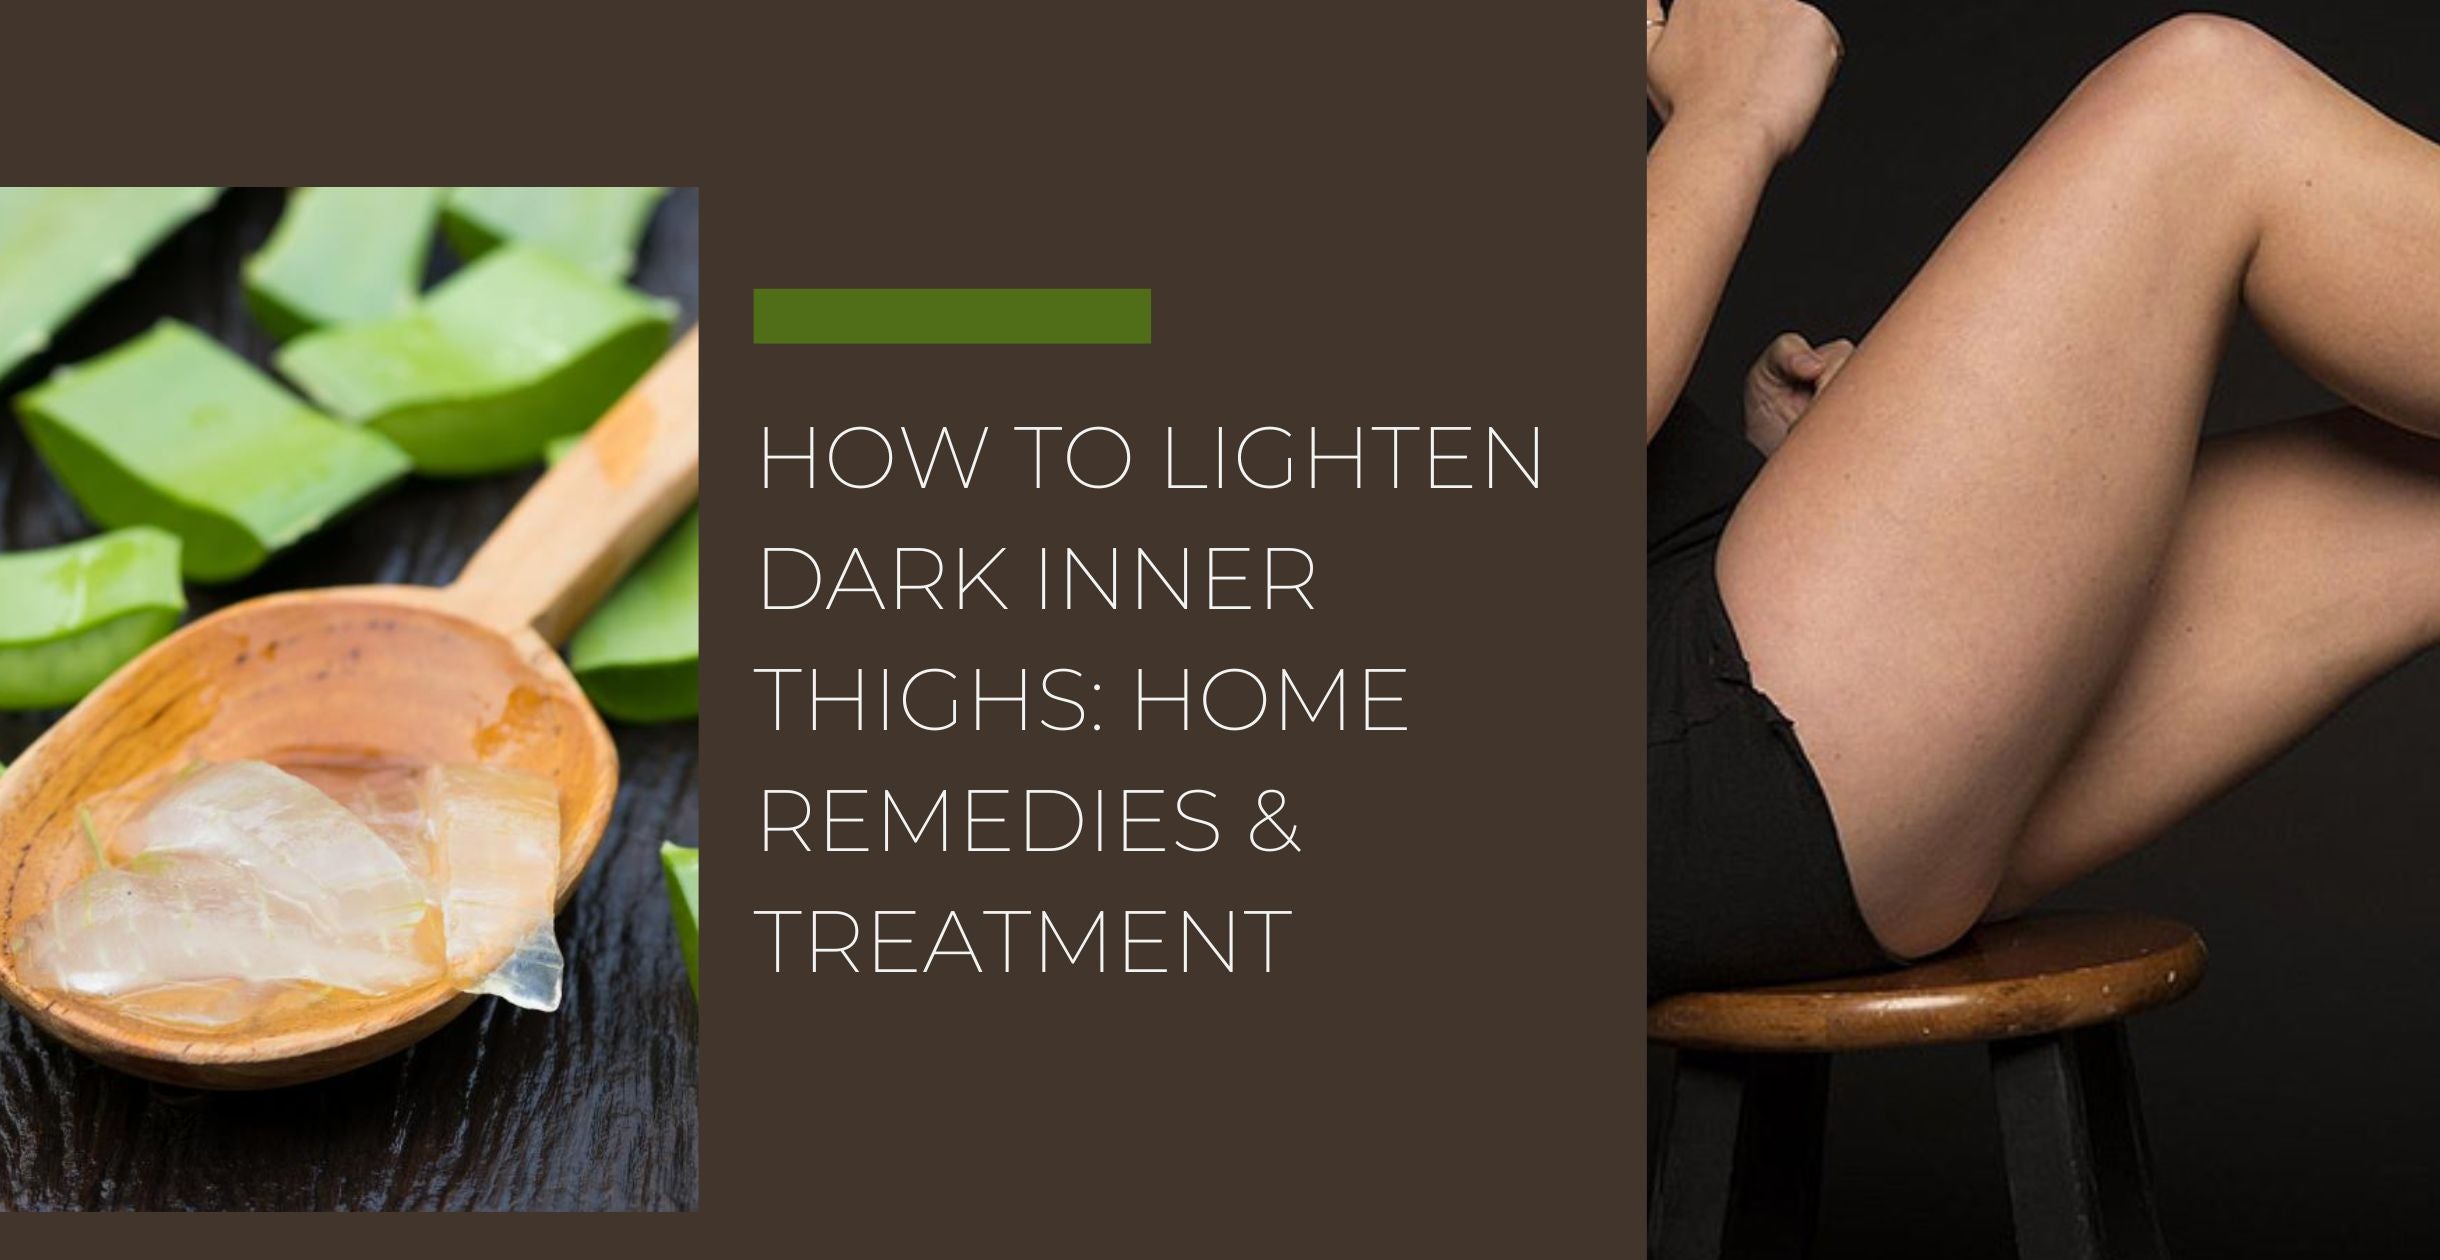 How to lighten dark inner thighs